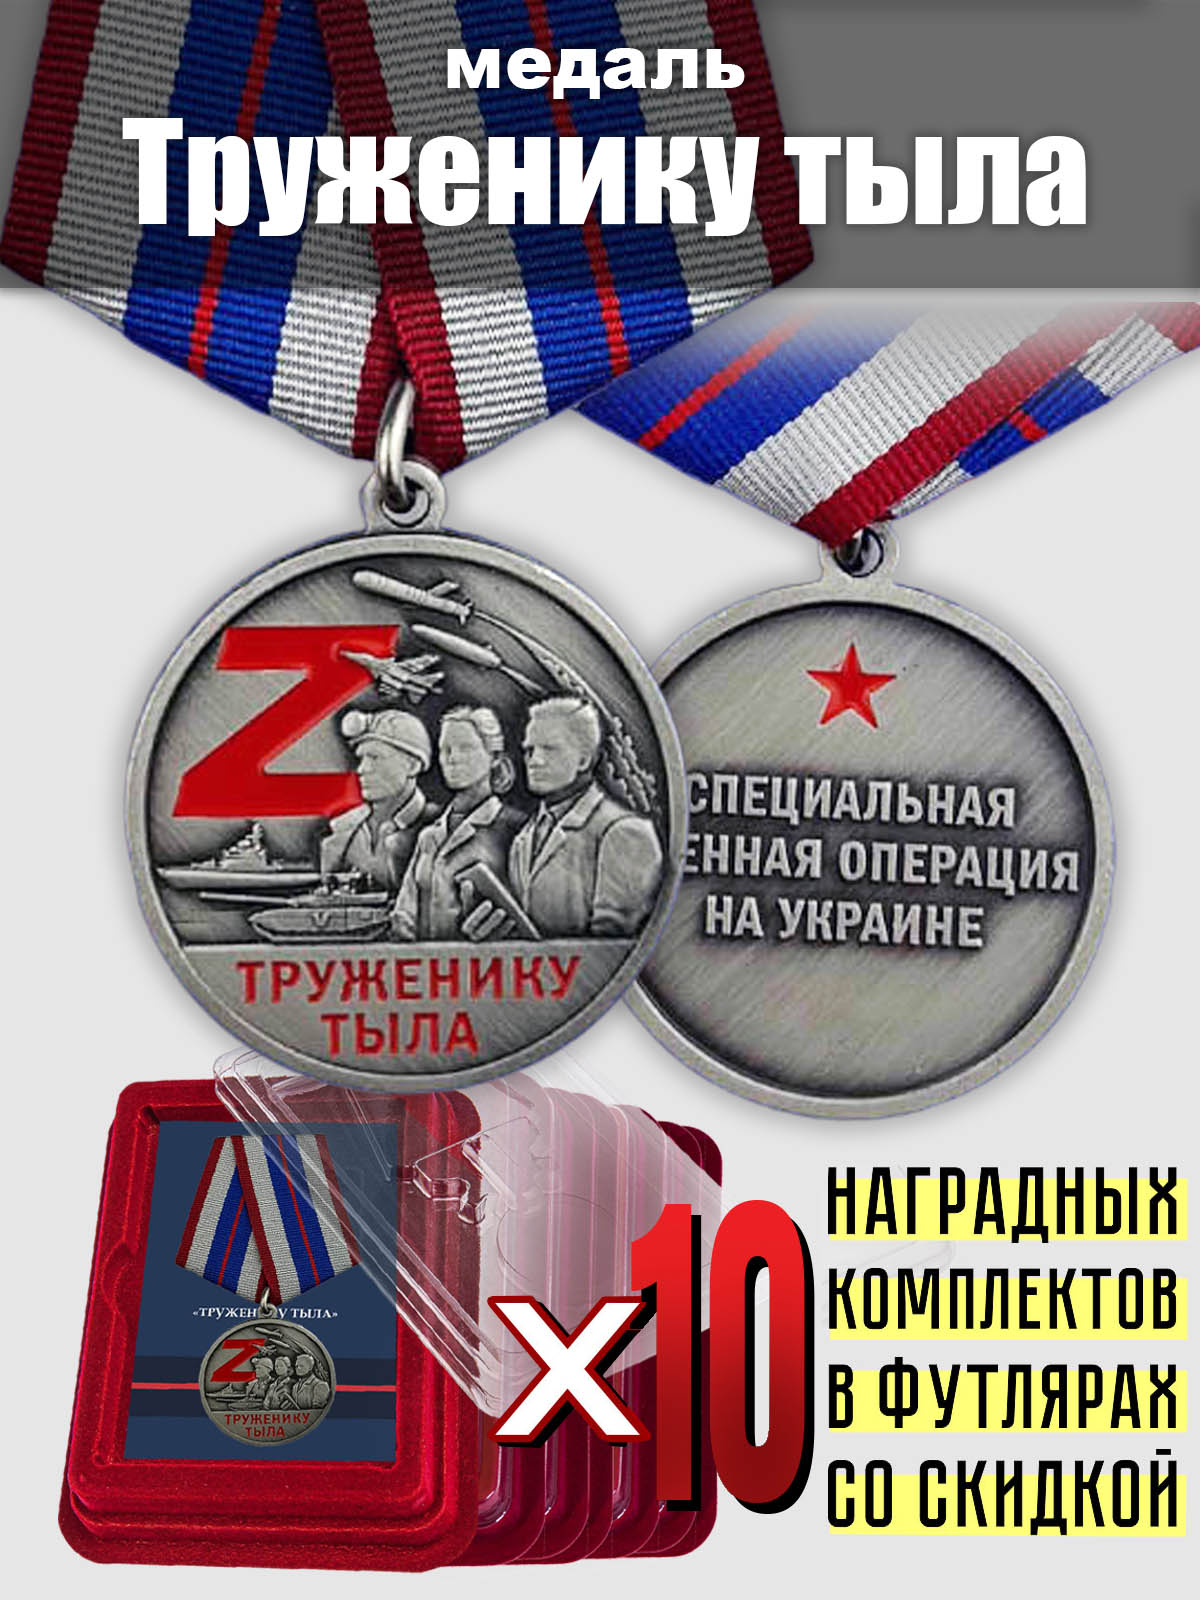 Наградной комплект медалей СВО "Труженику тыла" (10 шт.)